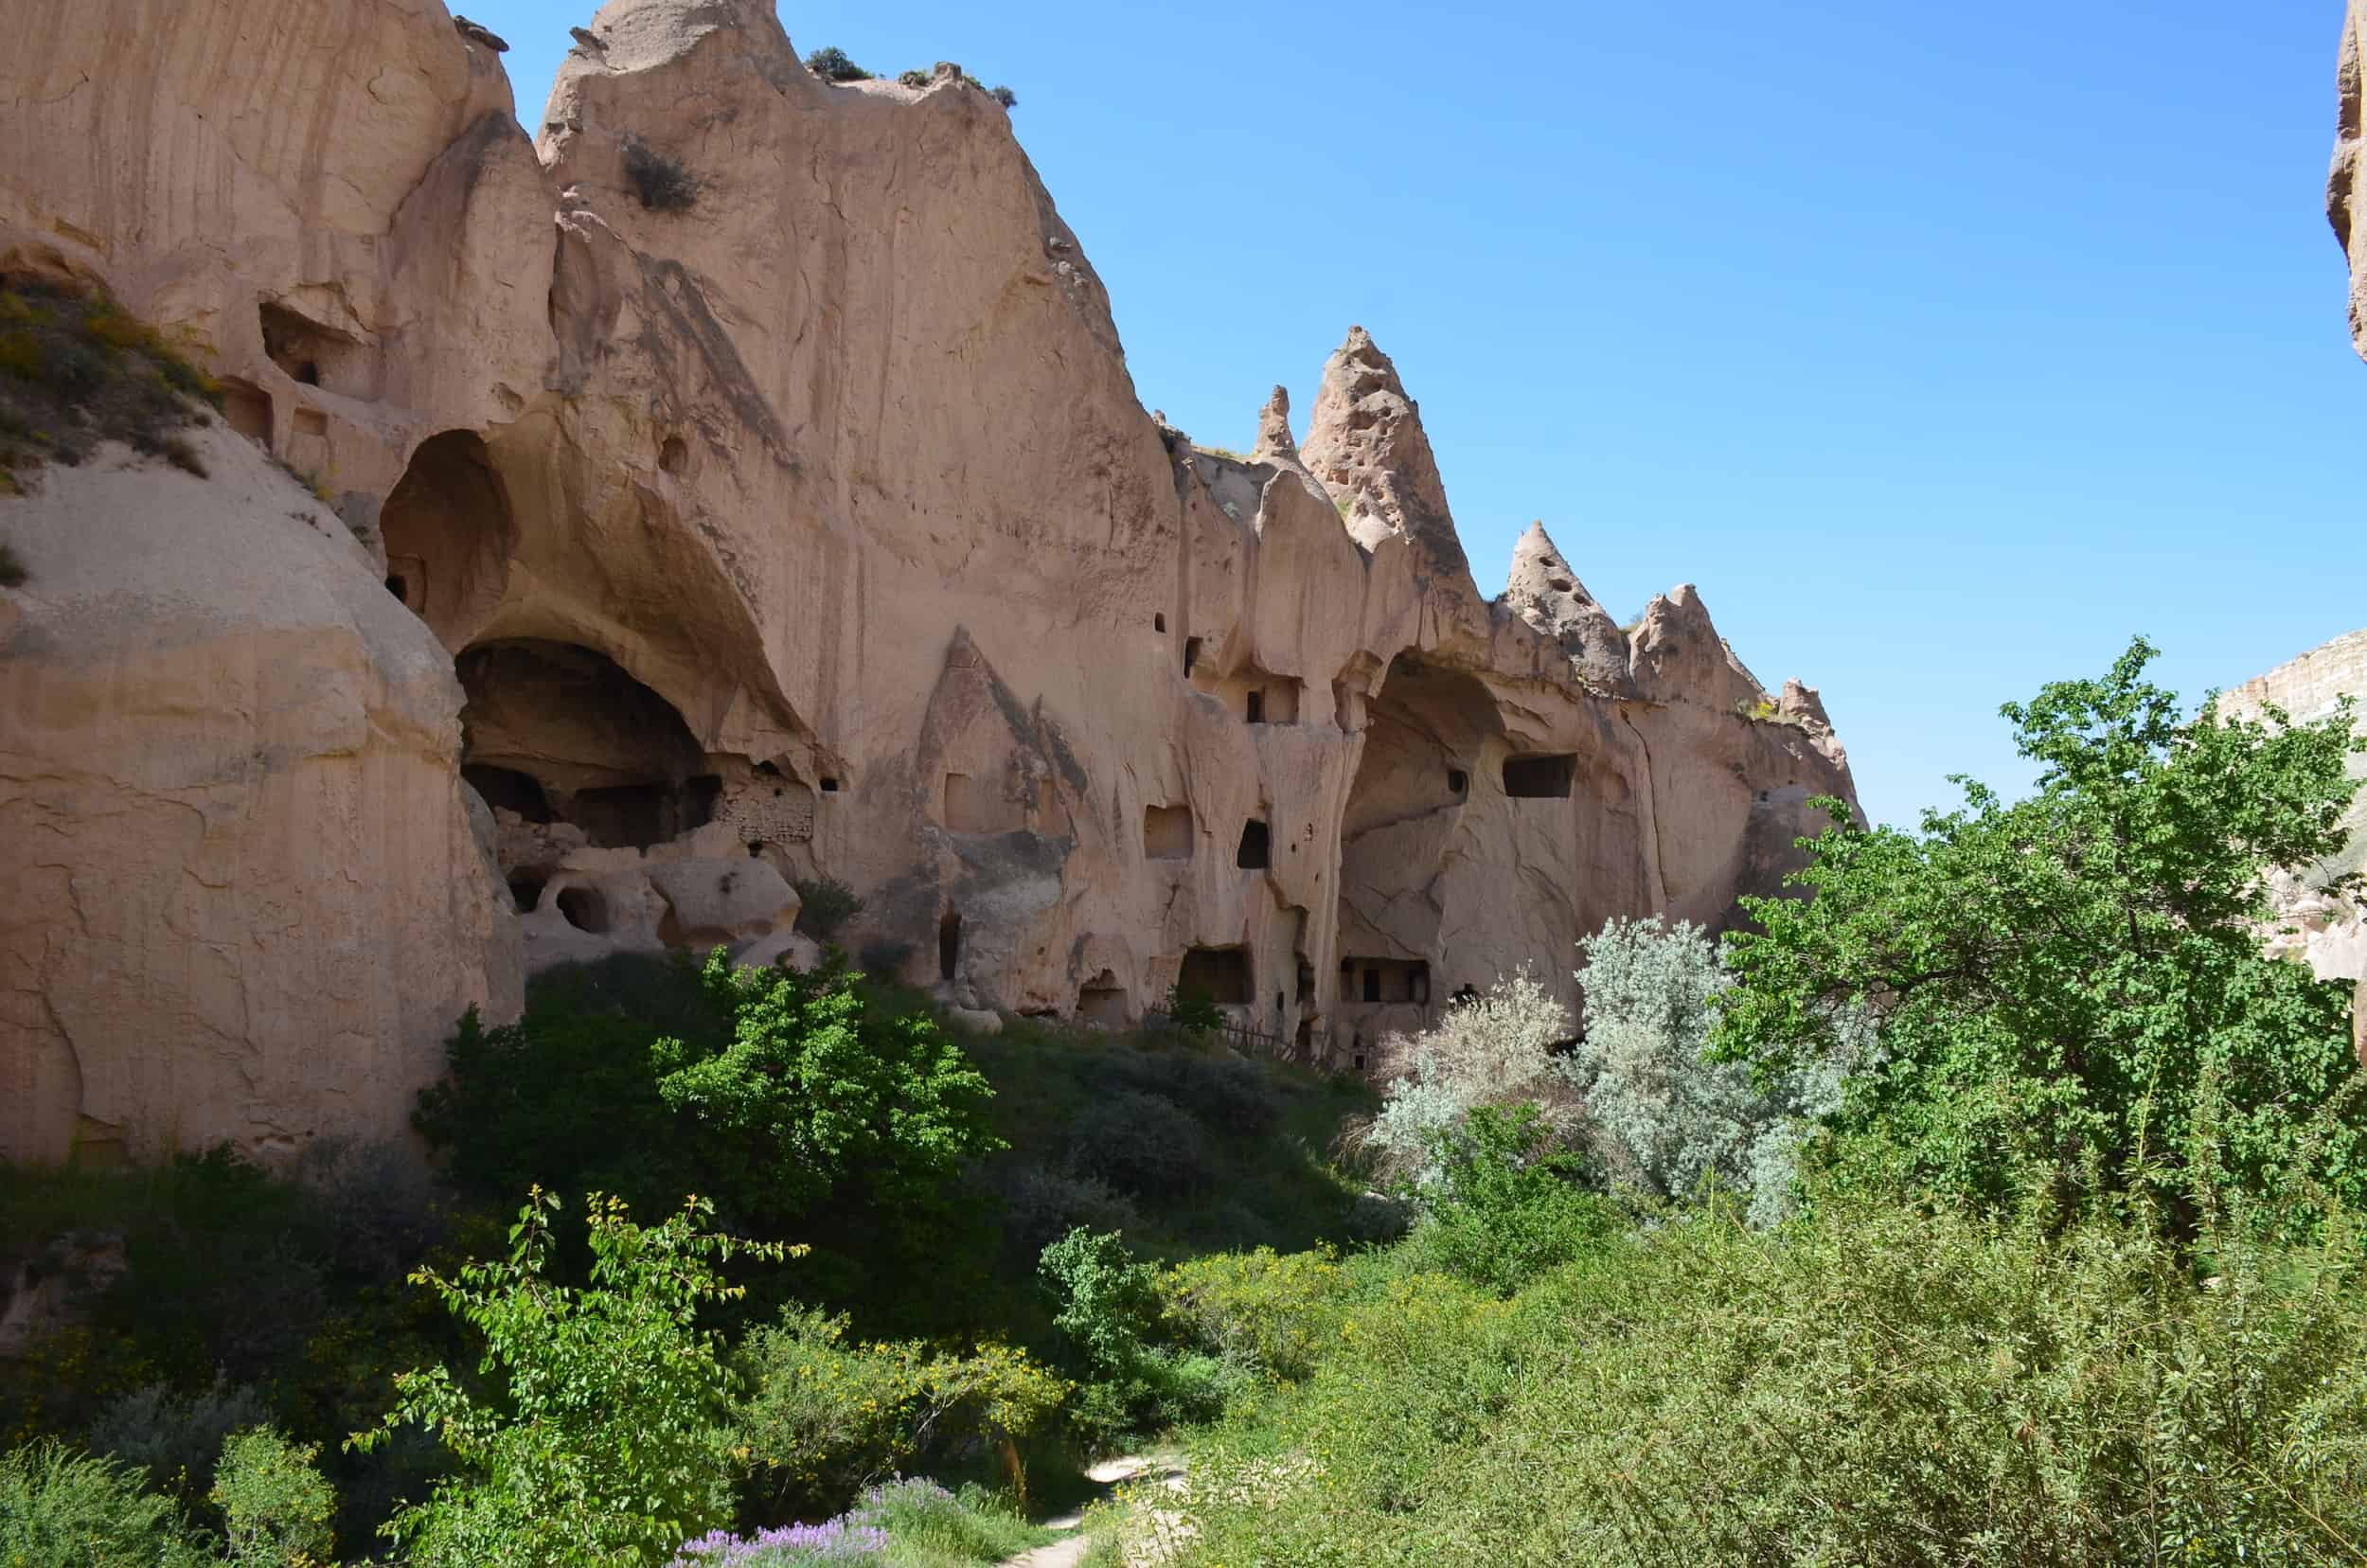 Monastery at Zelve Open Air Museum in Cappadocia, Turkey